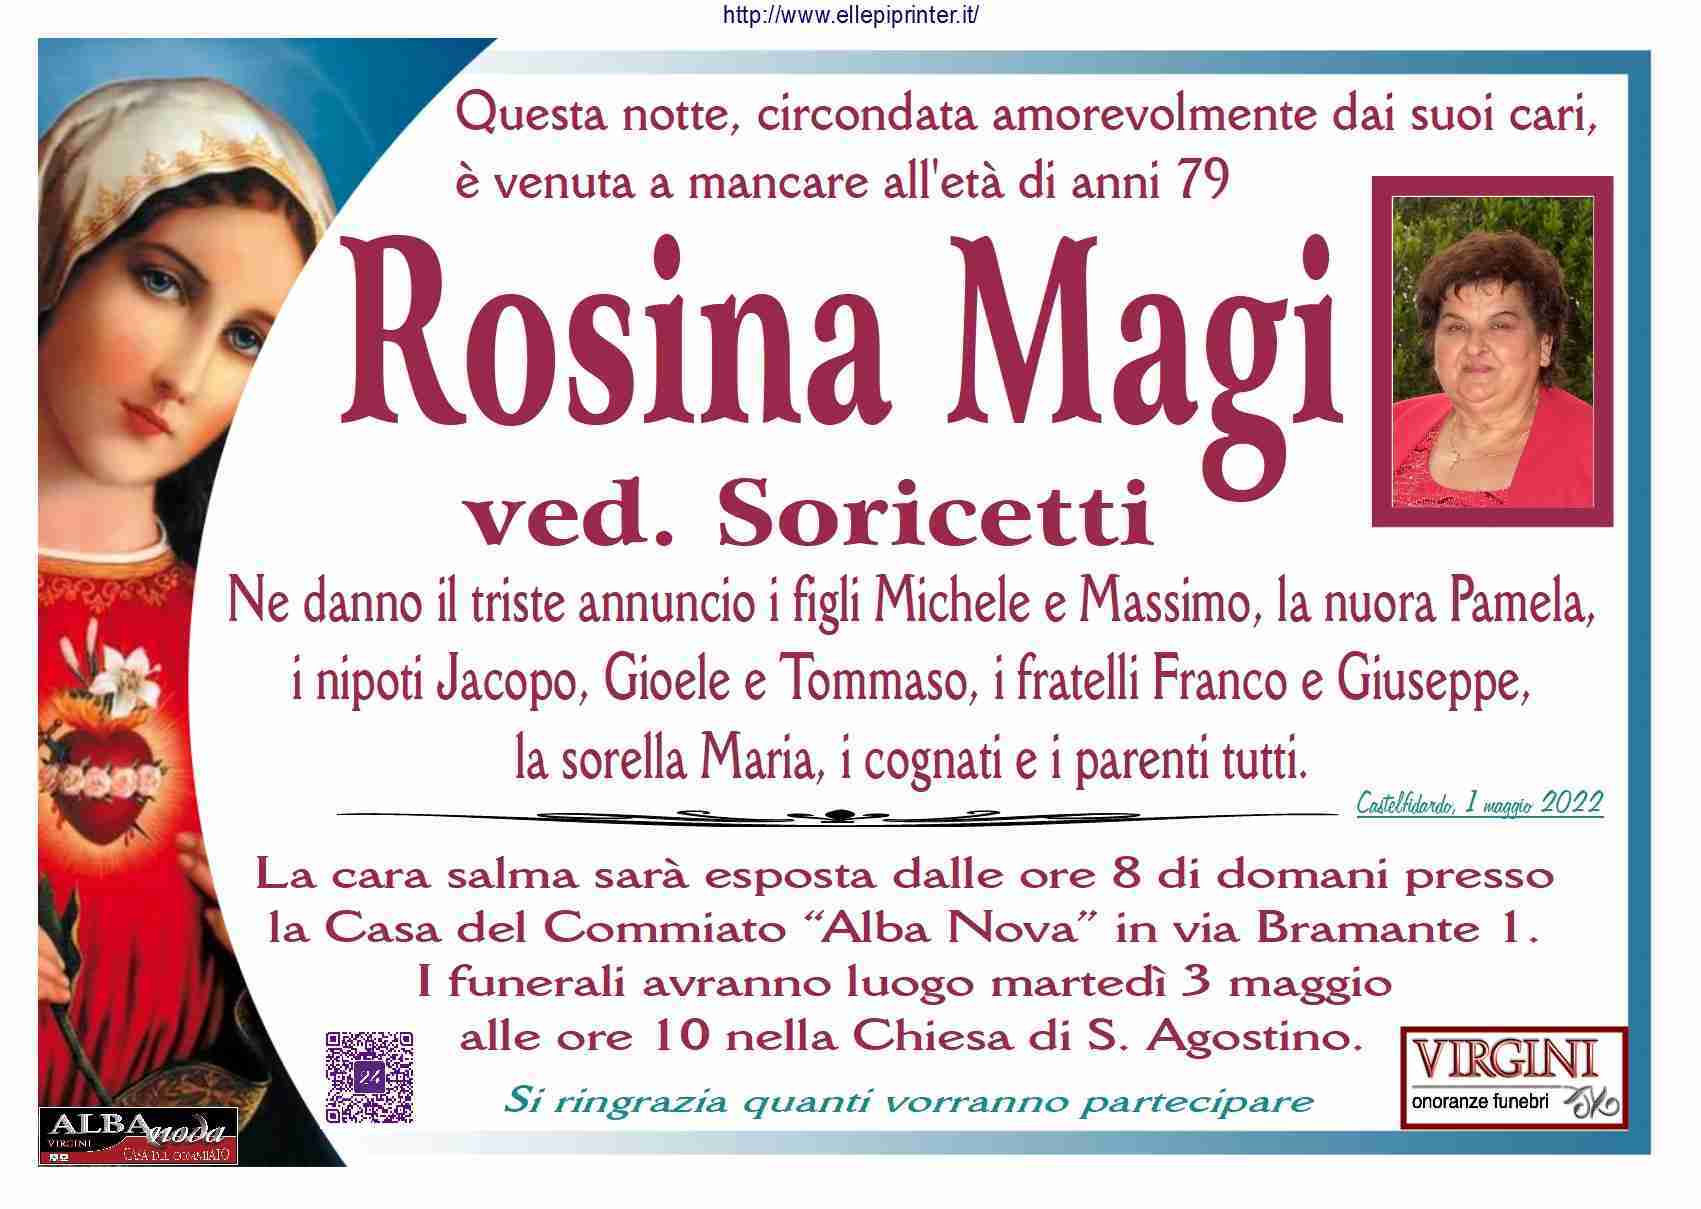 Rosina Magi